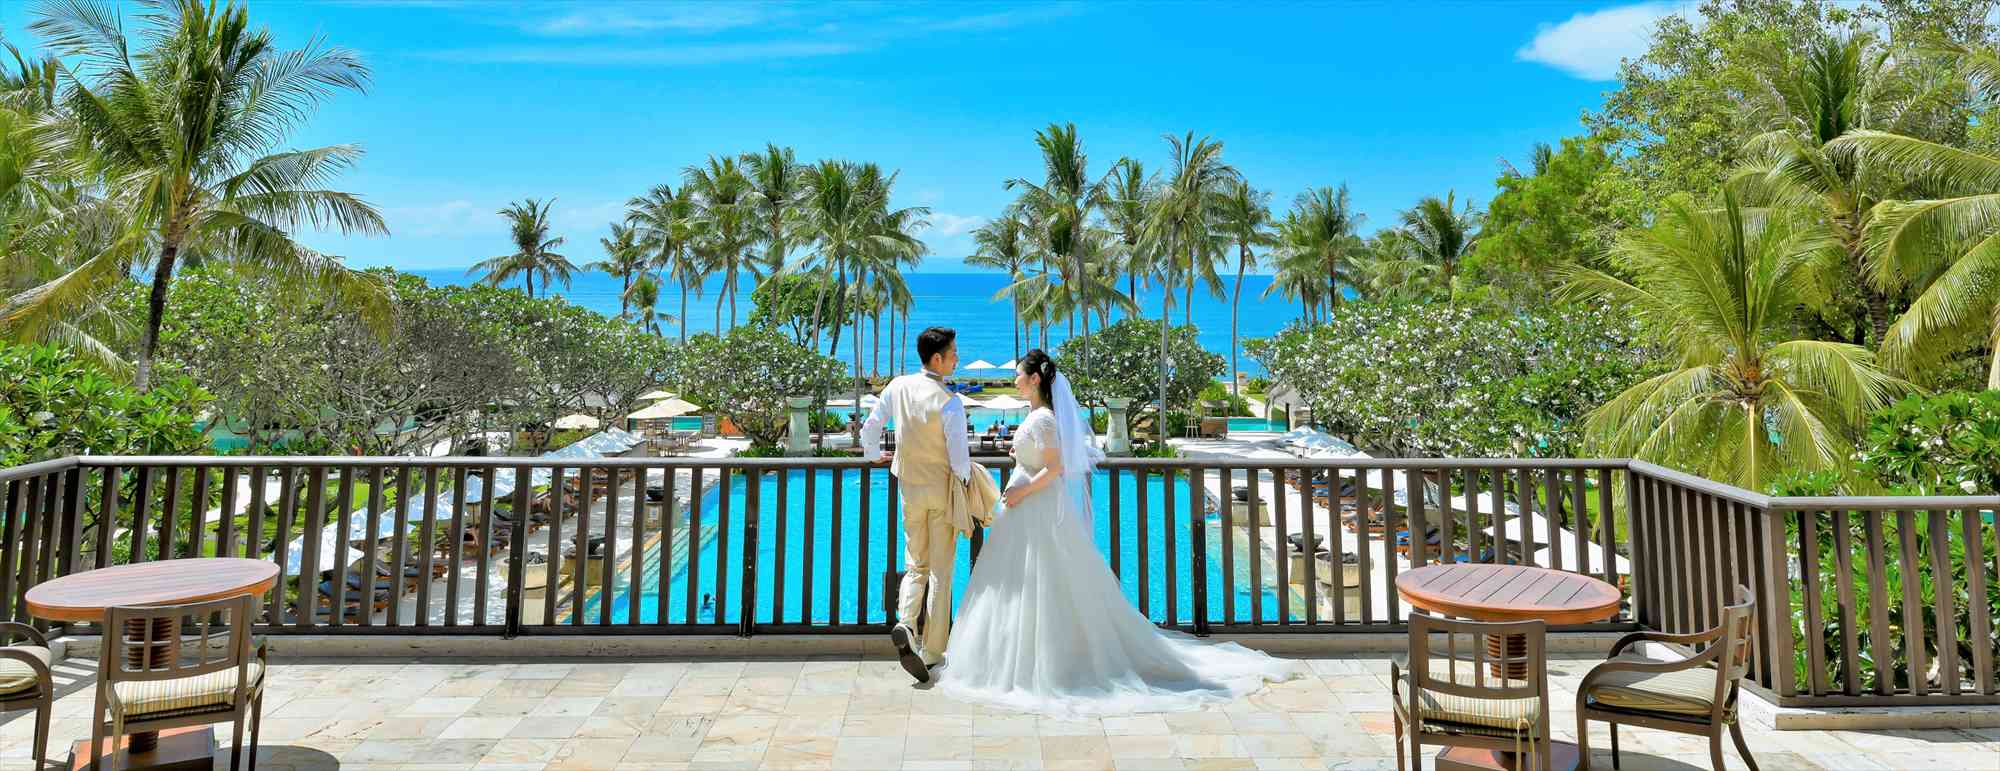 バリ島フォトウェディング・結婚写真撮影・挙式前撮り